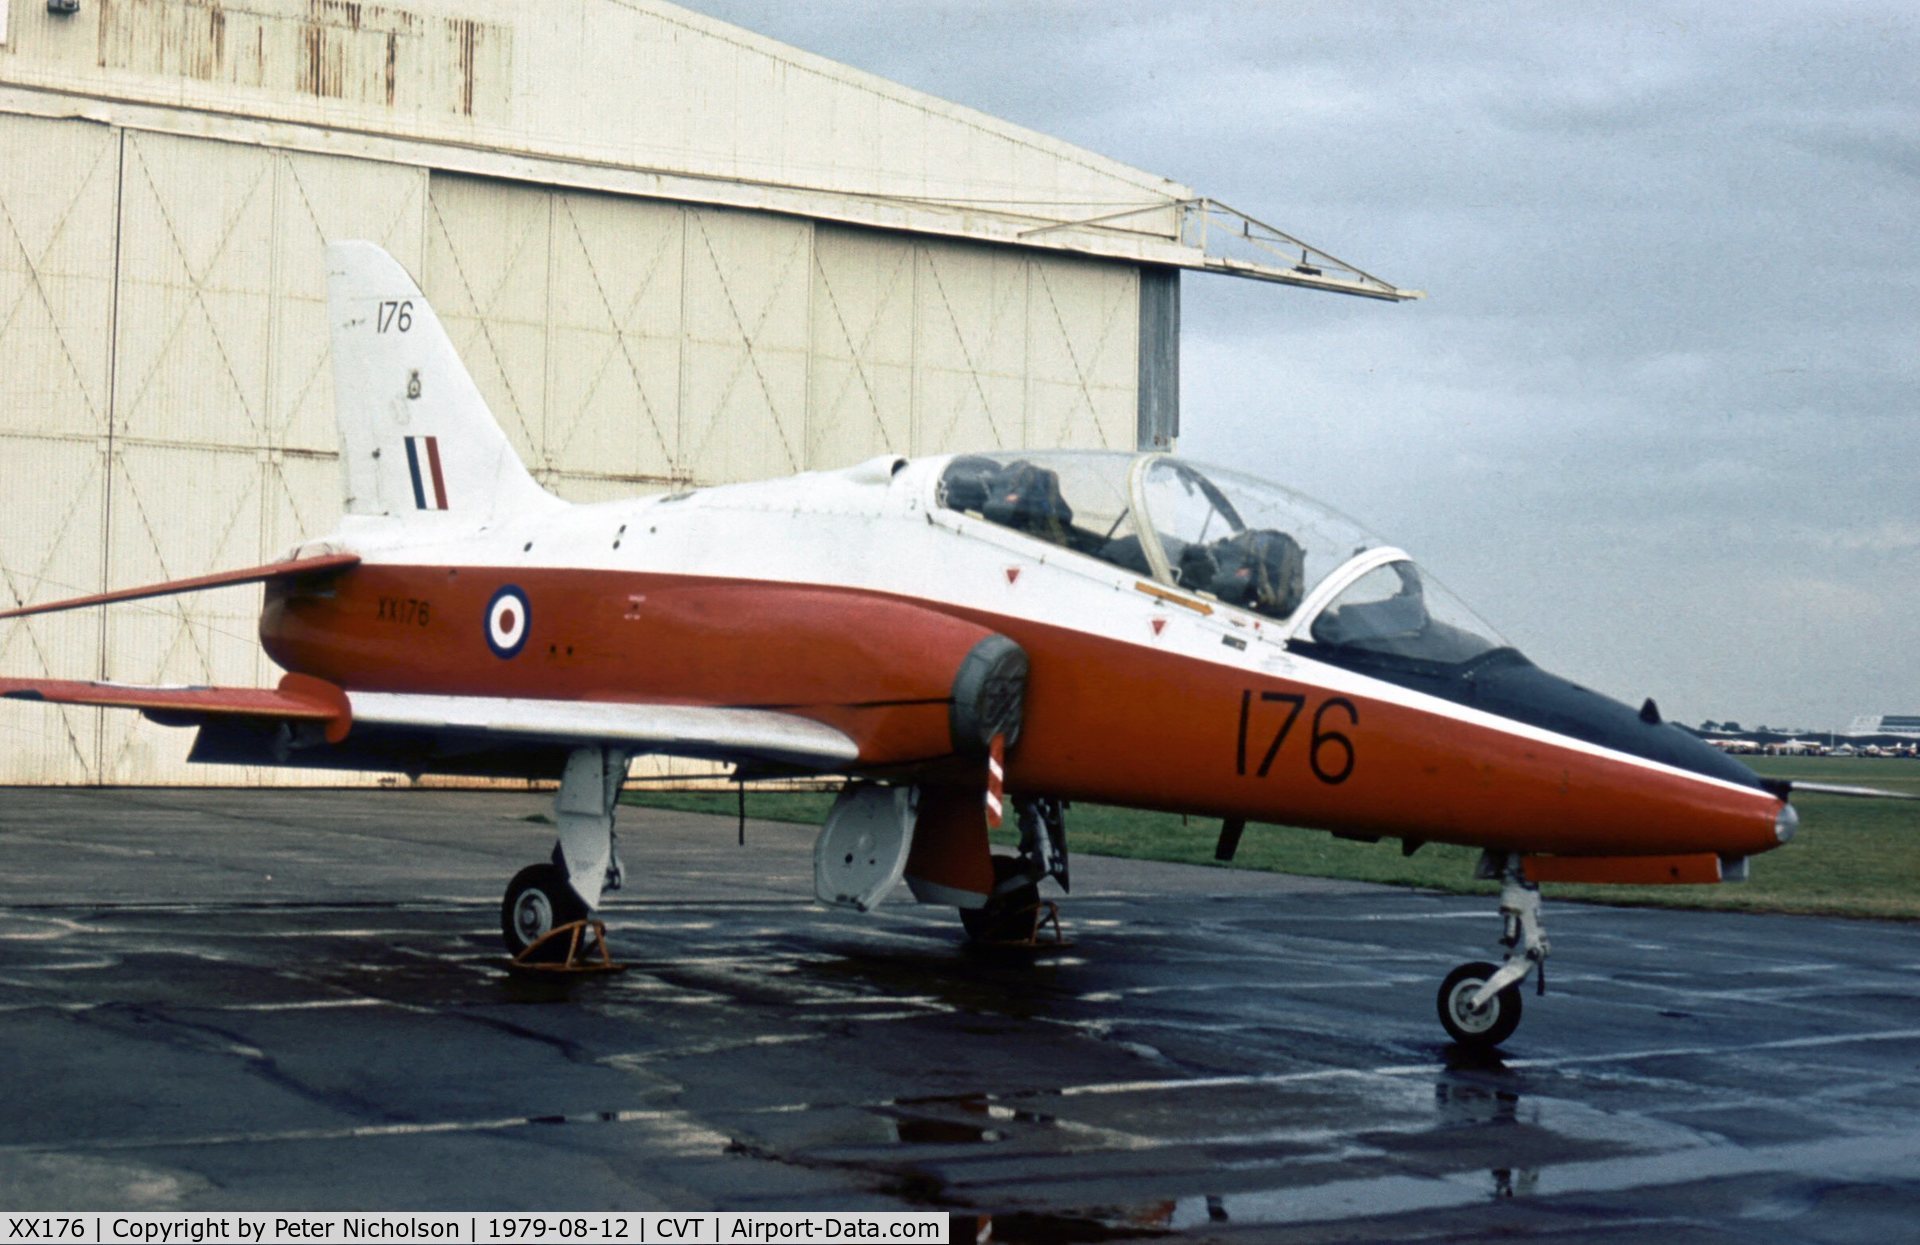 XX176, 1977 Hawker Siddeley Hawk T.1 C/N 023/312023, Hawk T.1 of 4 Flying Training School at the 1979 Coventry Airshow.